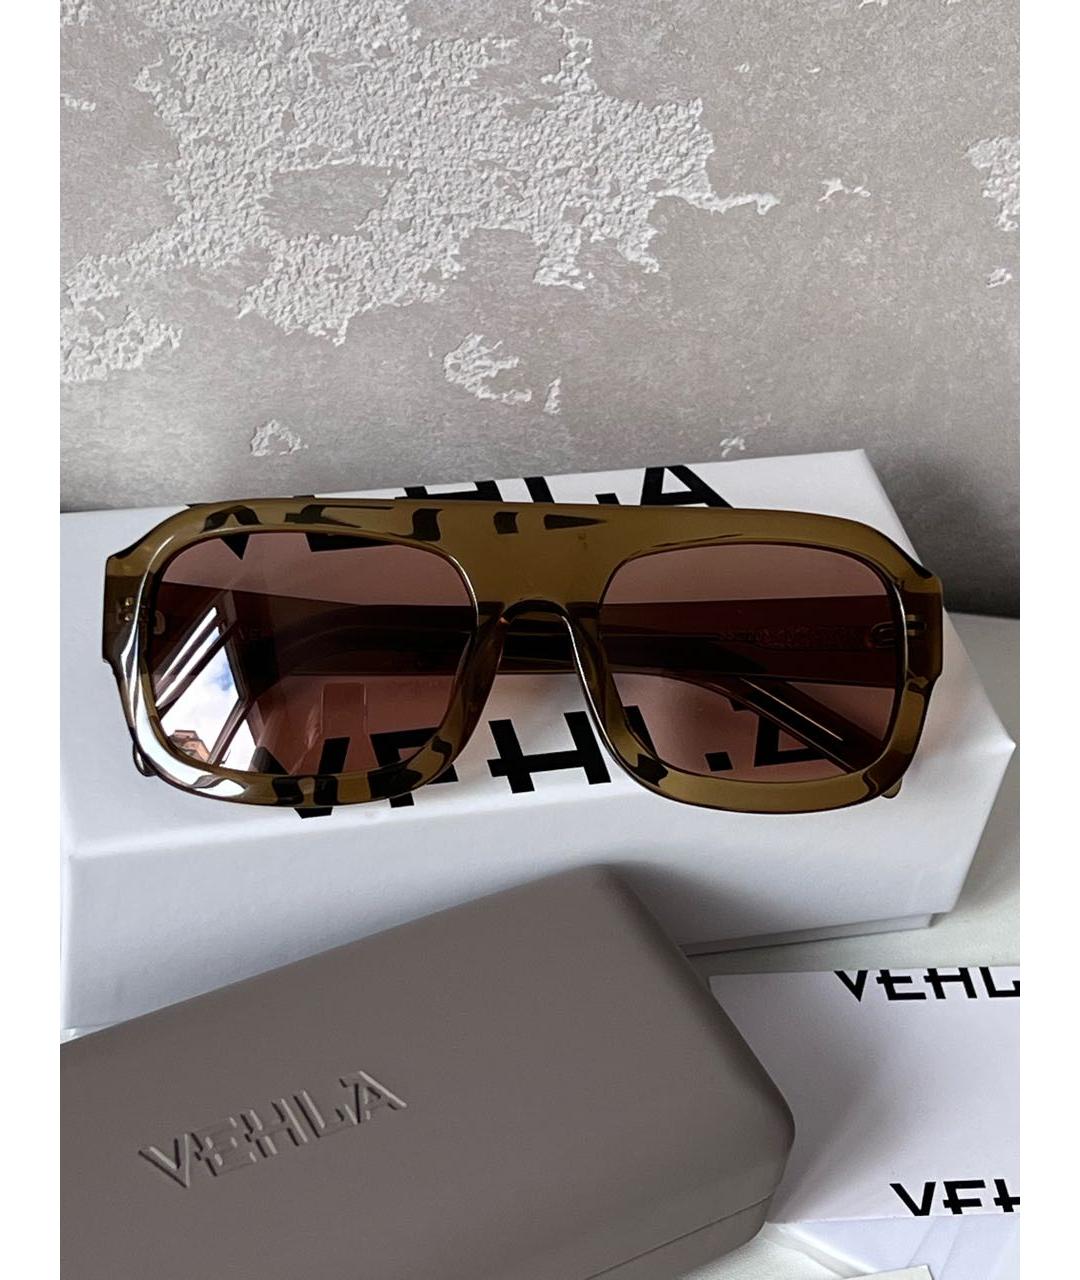 Vehla Бежевые пластиковые солнцезащитные очки, фото 2